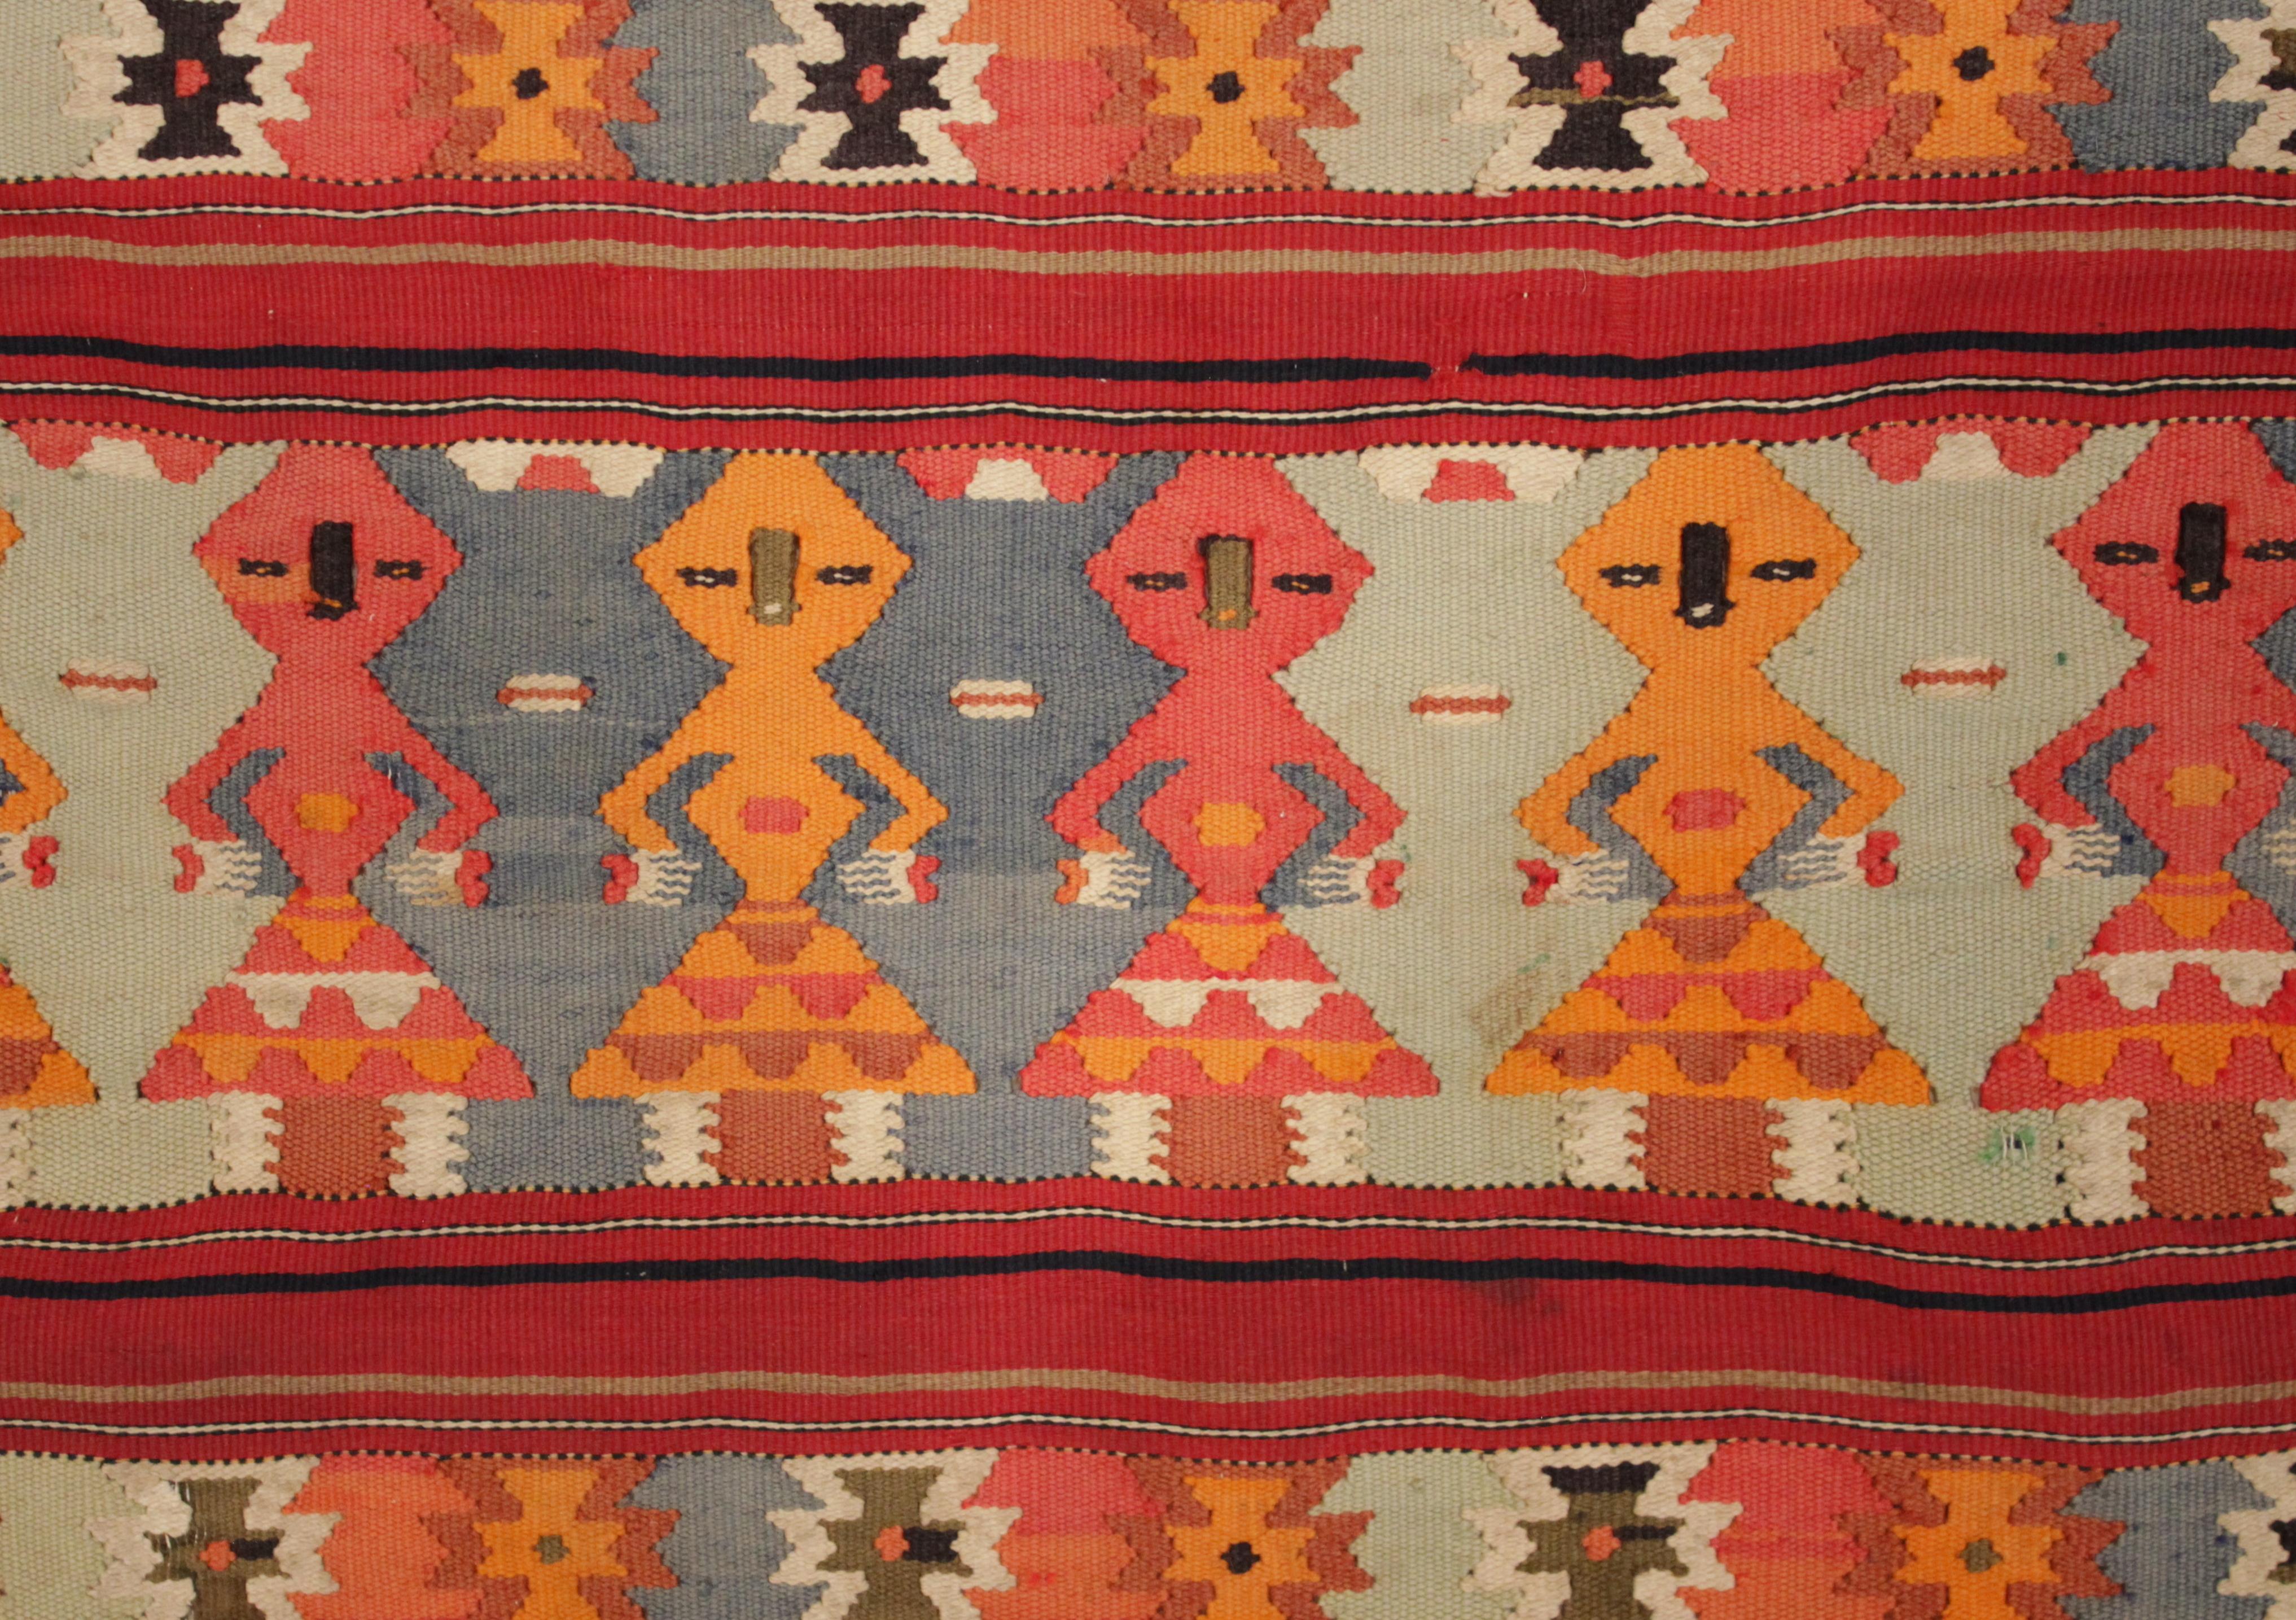 Ein sehr feiner Kissenbezug aus der Region Gafsa in Zentraltunesien, exquisit gewebt aus Wolle mit Seidendetails, verziert mit geometrischen Motiven, die entlang horizontaler Fächer angeordnet sind. Der untere Rock ist mit sechs Frauenfiguren